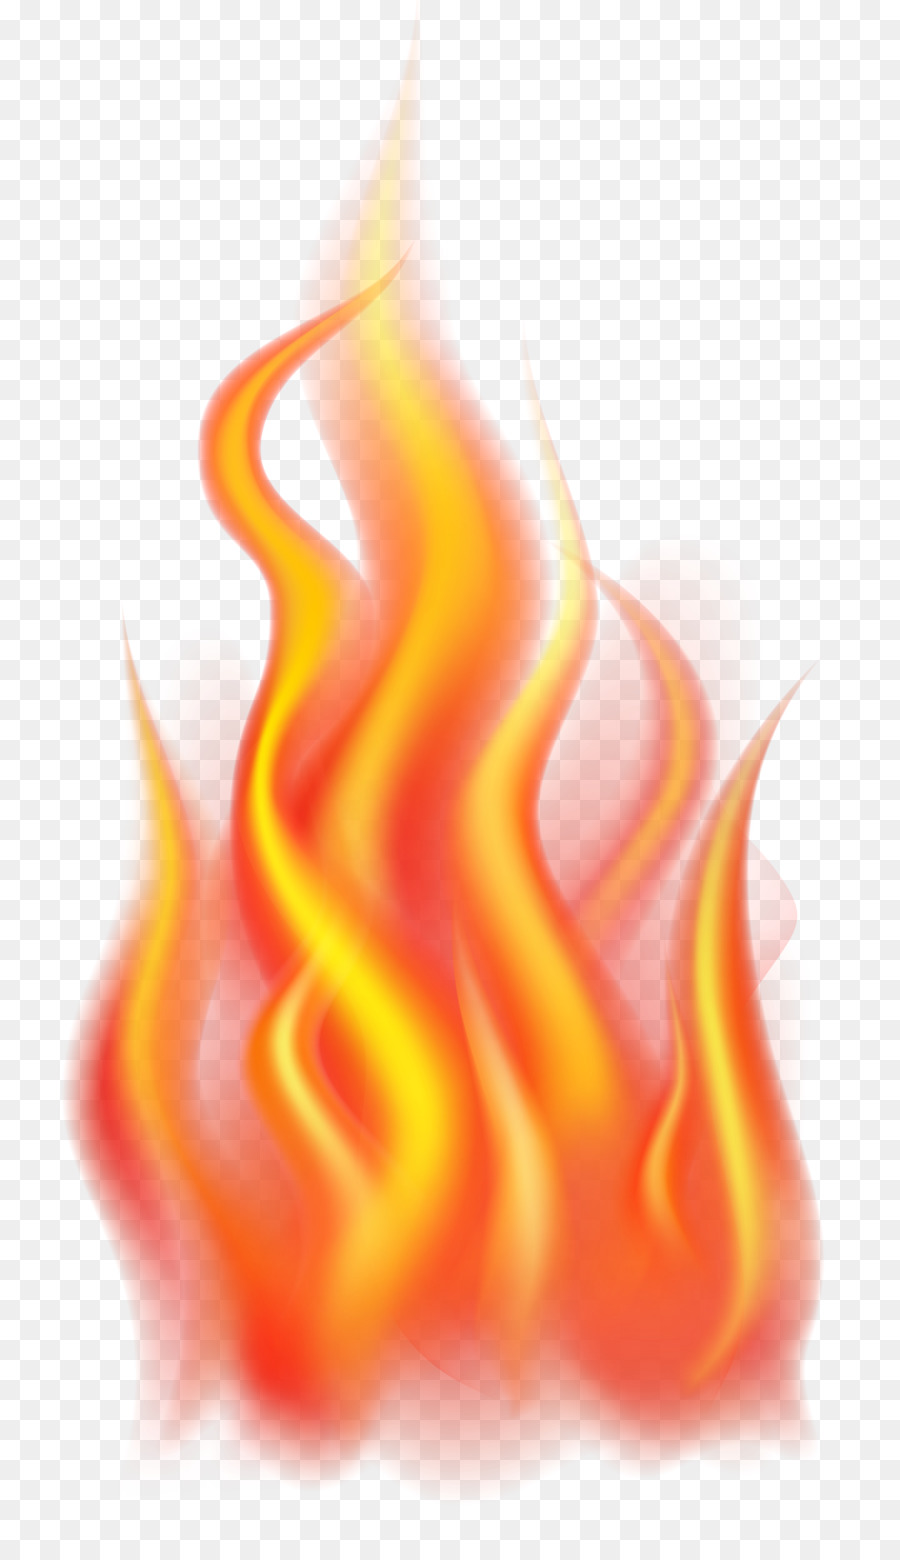 Flame Desktop Wallpaper Fire - Fire Flames Transparent Background - HD Wallpaper 